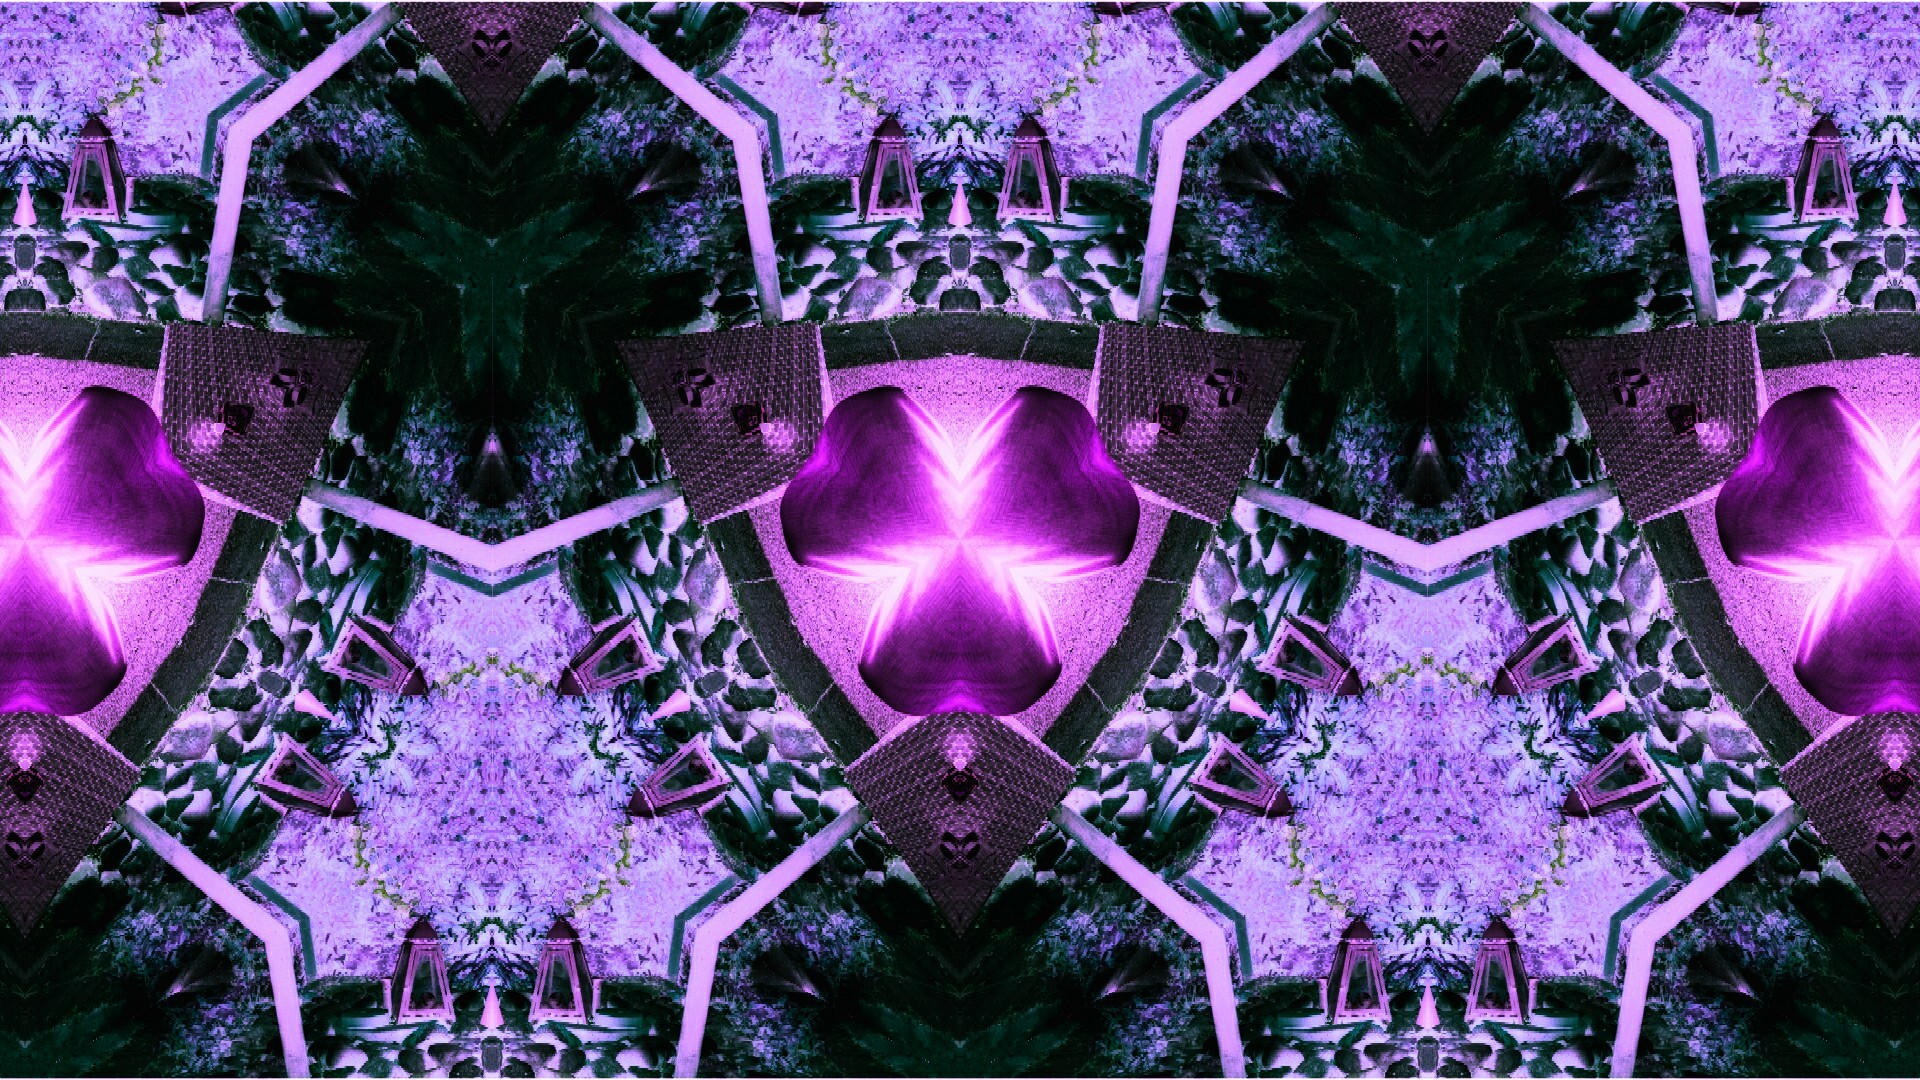 General 1920x1080 purple symmetry digital art